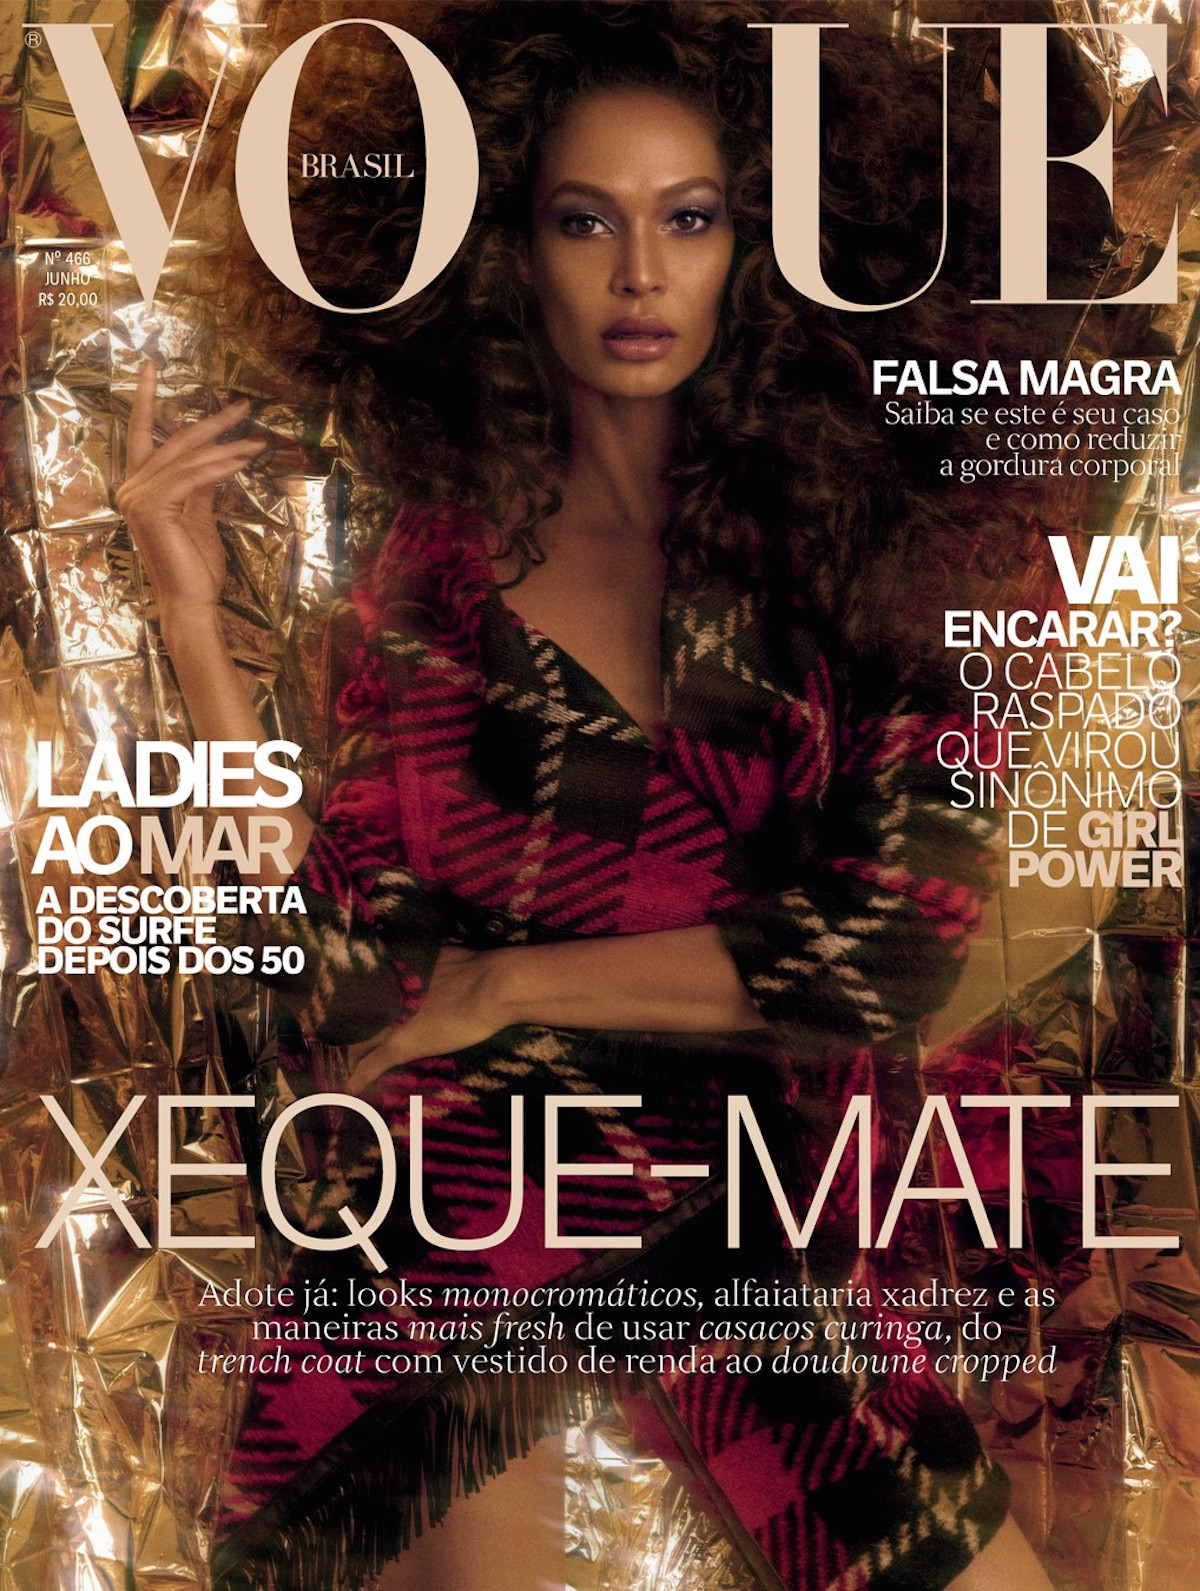 Обложка 2017. Vogue Brazil обложки. Vogue в Бразилии. Бразильский Вог журнал обложки.